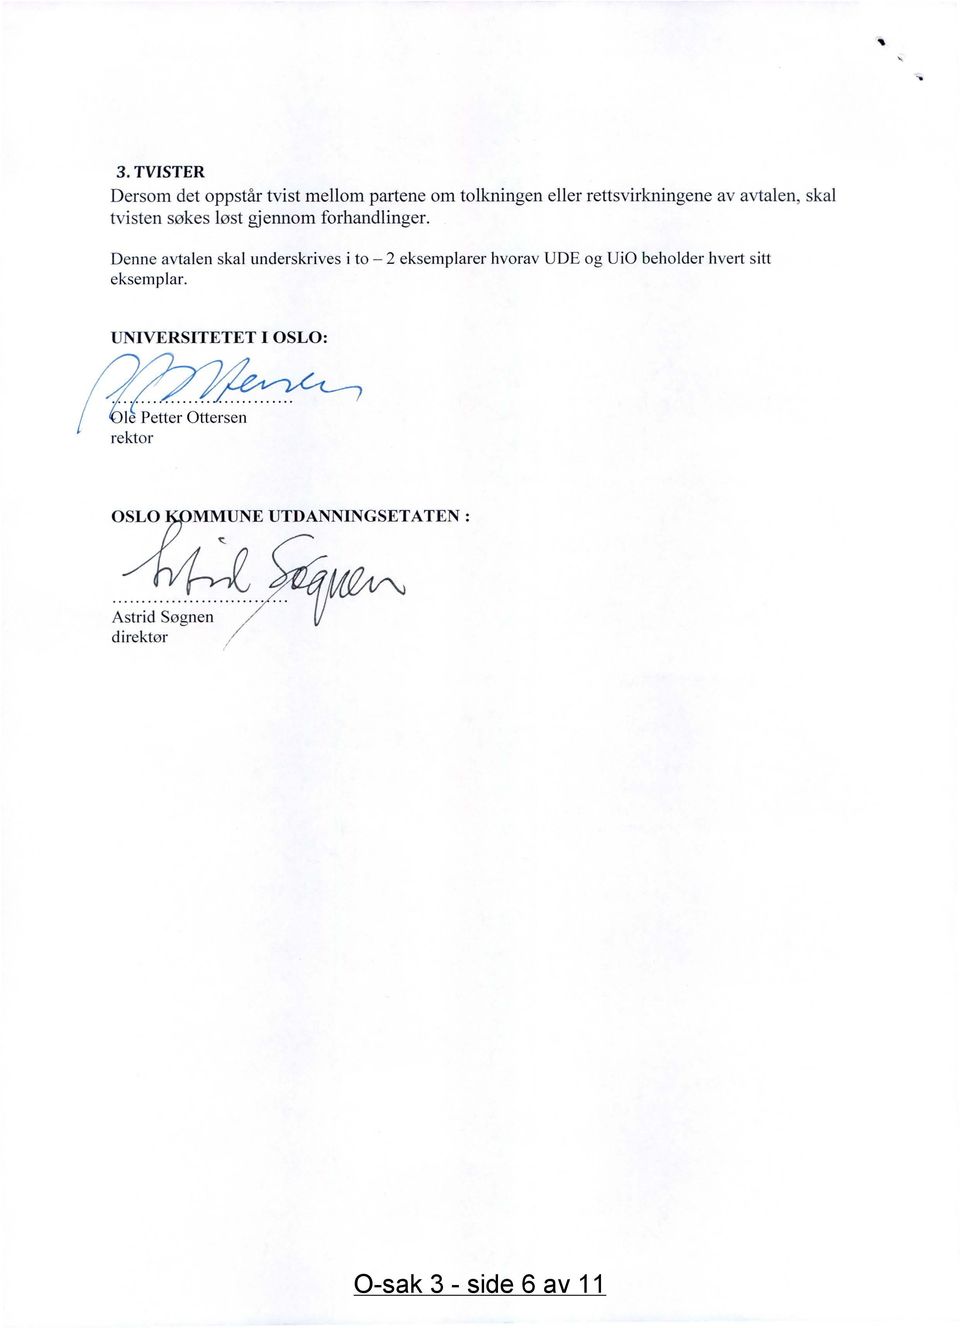 Denne avtalen skal underskrives i to - 2 eksemplarer hvorav UDE og U io beholder hvert sitt